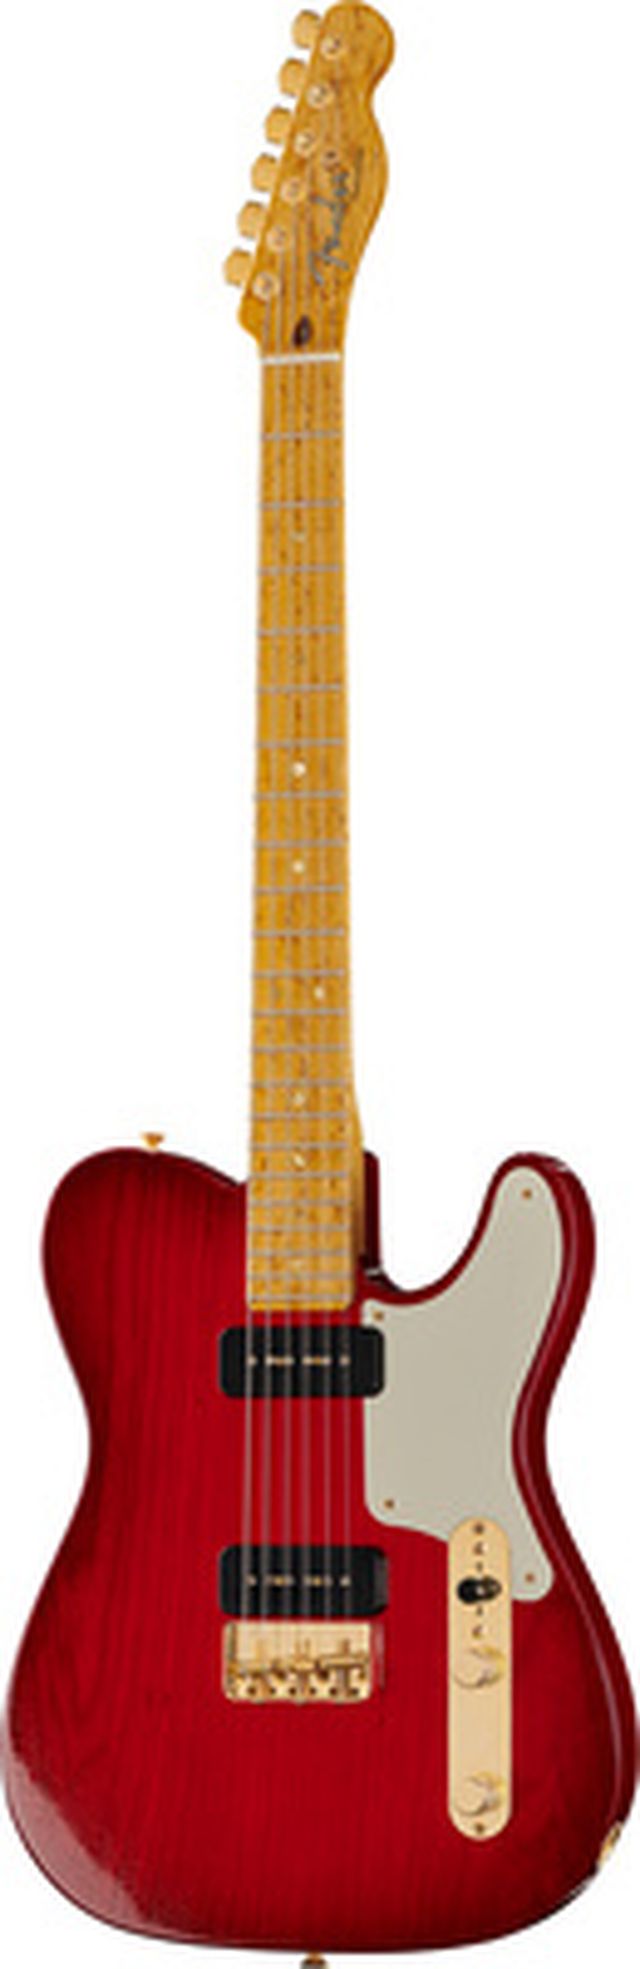 Fender Custom P90 Tele DLX Closet TRB